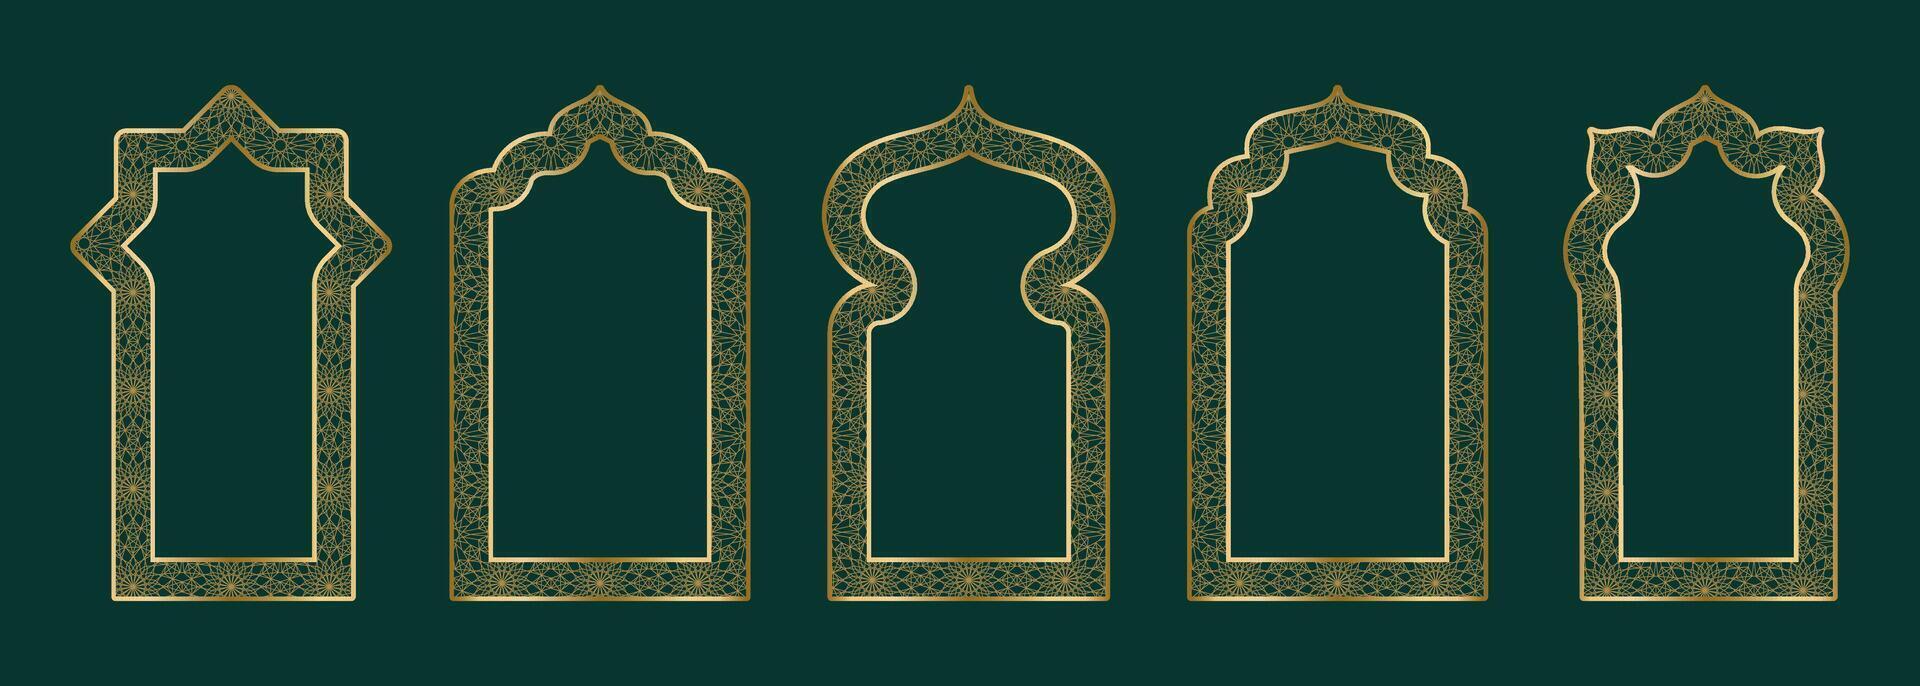 Gold Zier Bogen Rahmen gestalten islamisch Tür oder Fenster mit geometrisch girikh Muster, Silhouette Arabisch Bogen. Luxus einstellen im orientalisch Stil. Frames im Arabisch Muslim Design zum Ramadan karem. Vektor